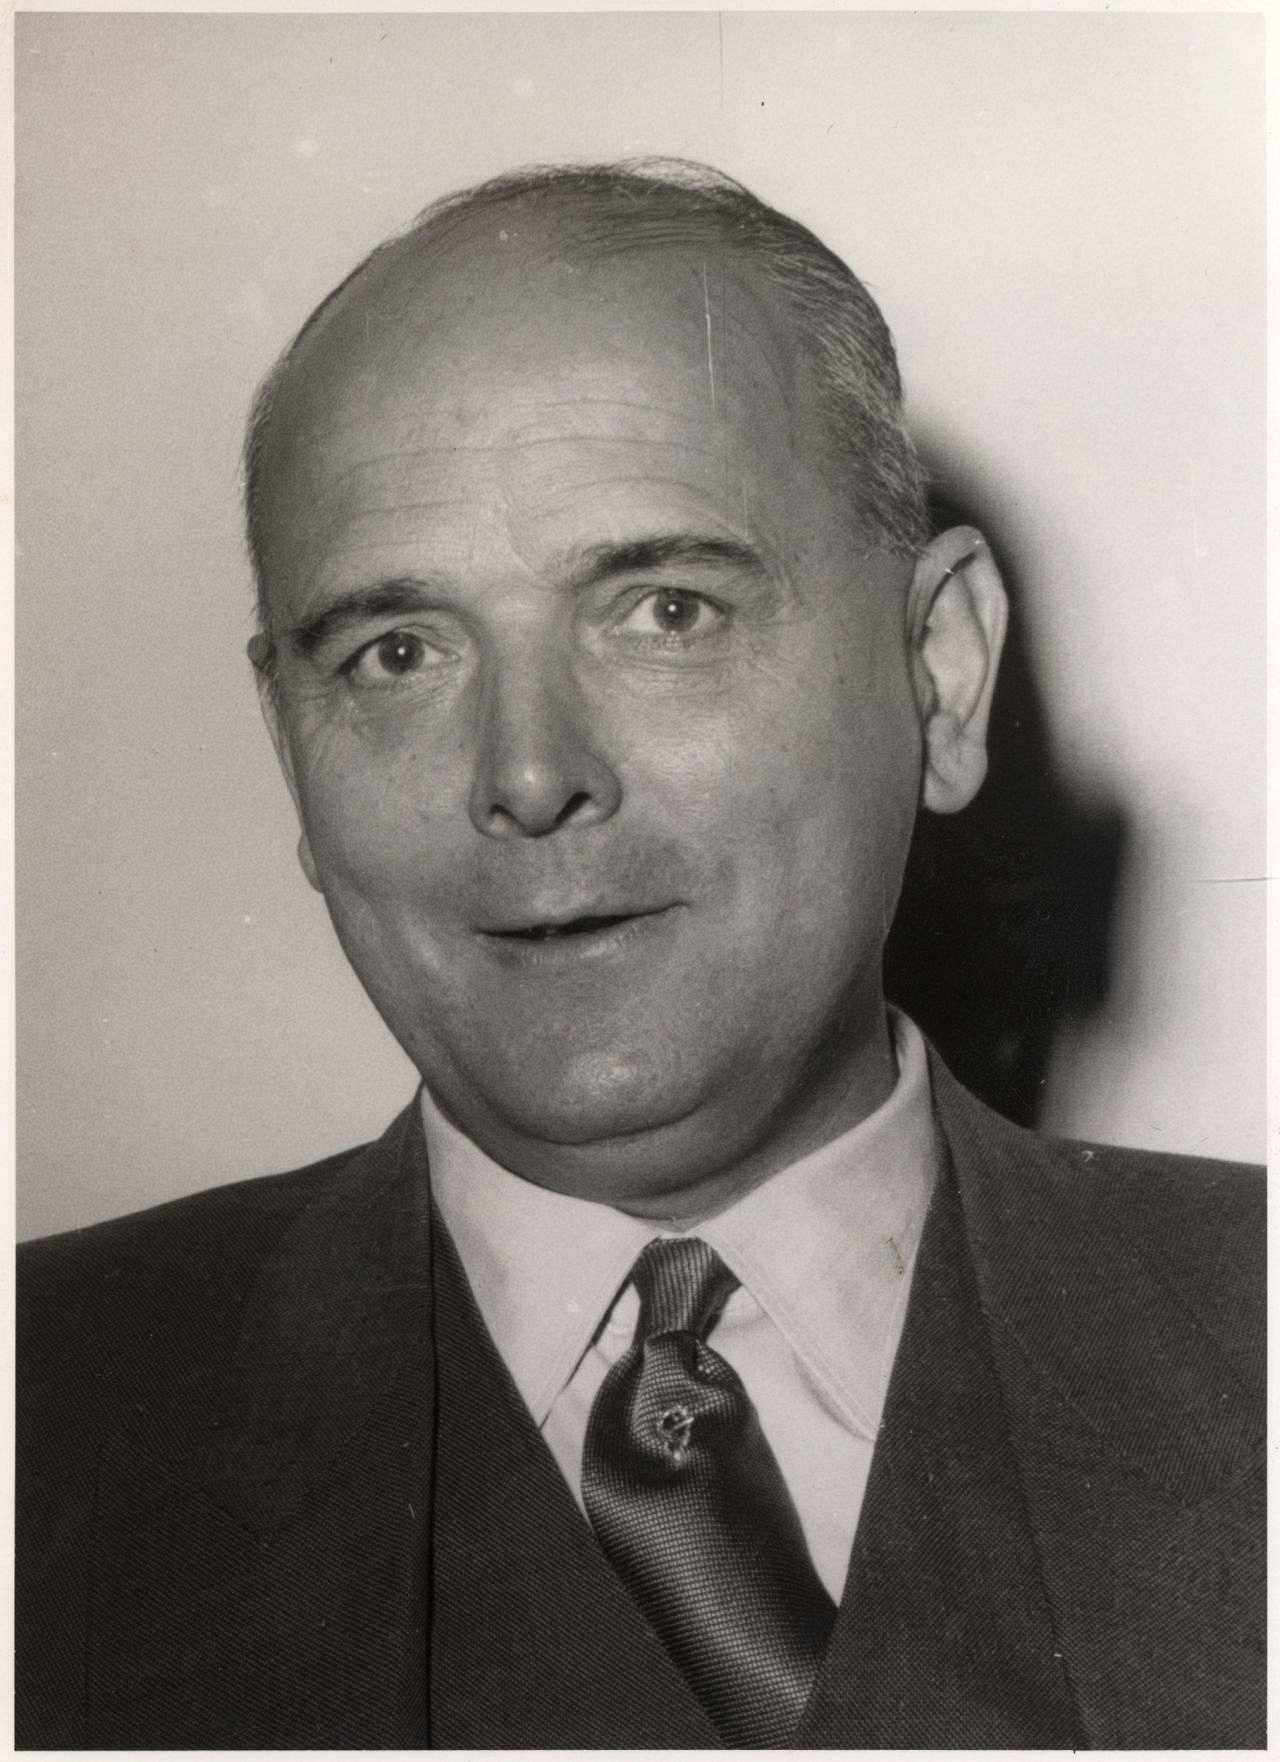 Porträtfotografie von Franz-Josef Wuermeling, Bundesminister für Familienfragen (1953-1962).